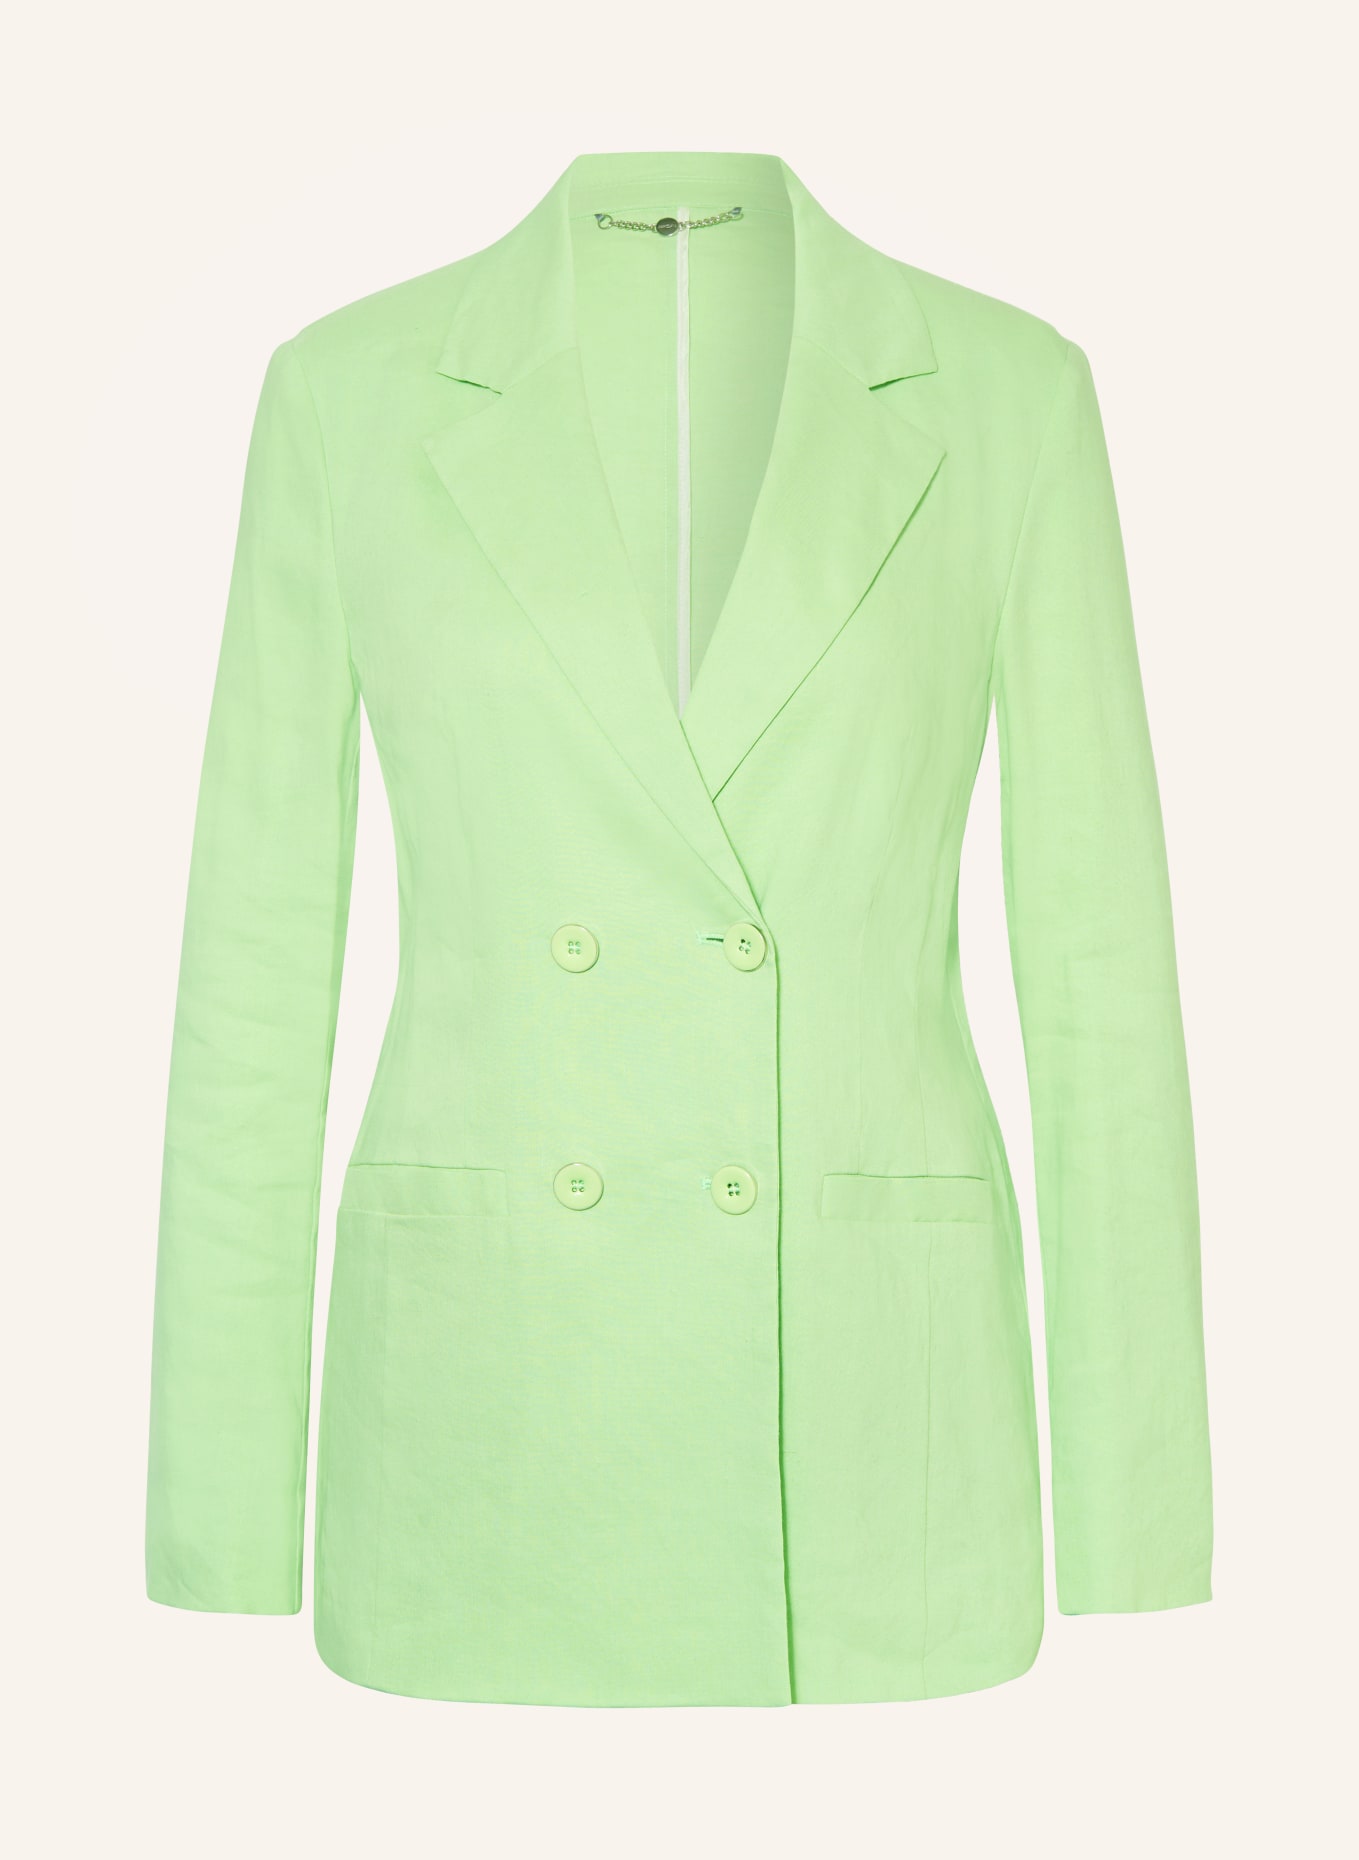 MARC CAIN Blazer mit Leinen, Farbe: 531 light apple green (Bild 1)